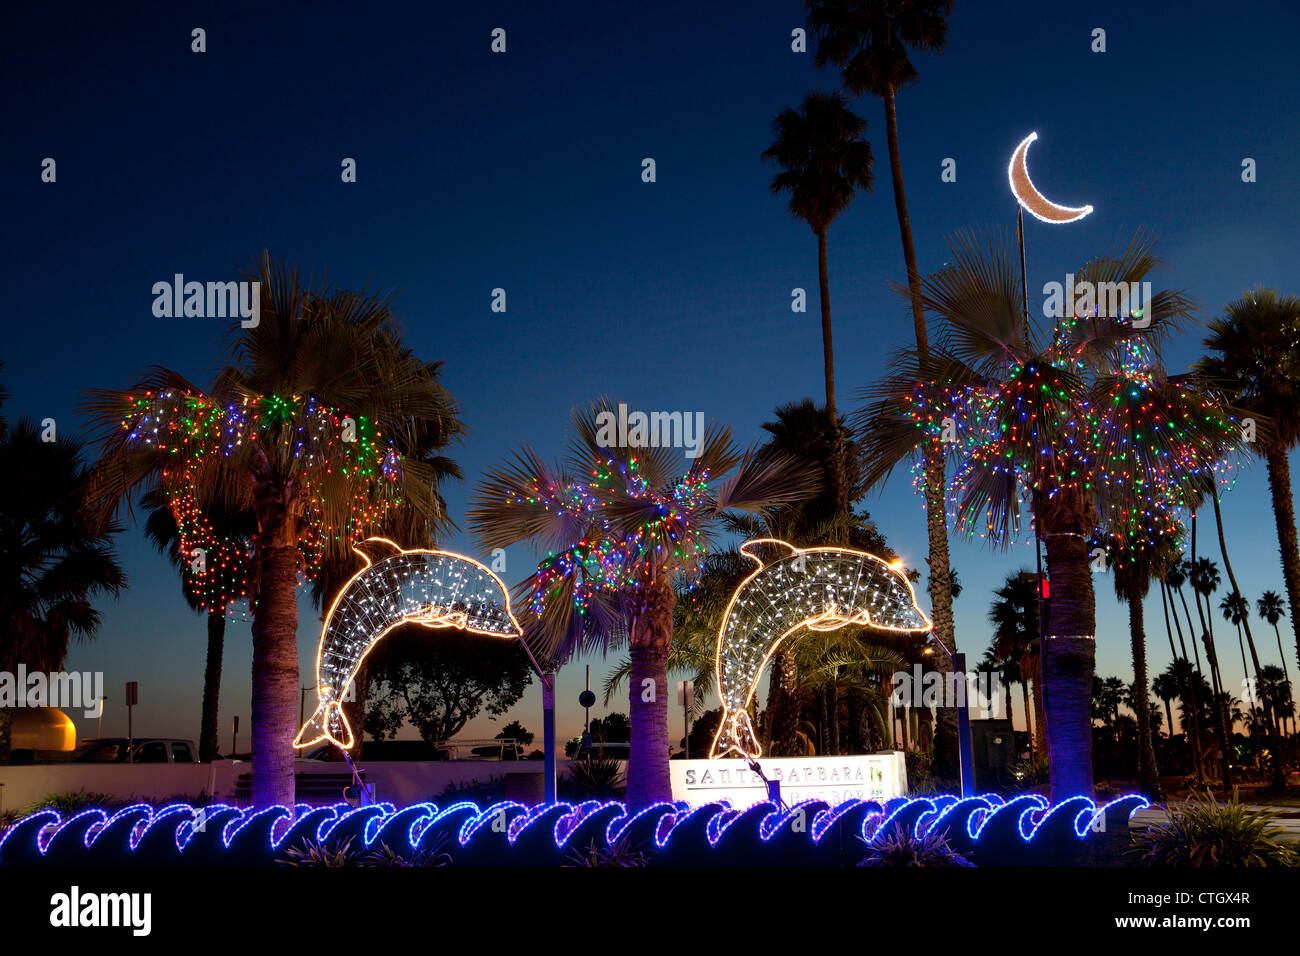 Weihnachtslichter in Santa Barbara, California, Vereinigte Staaten von Amerika Stockfoto